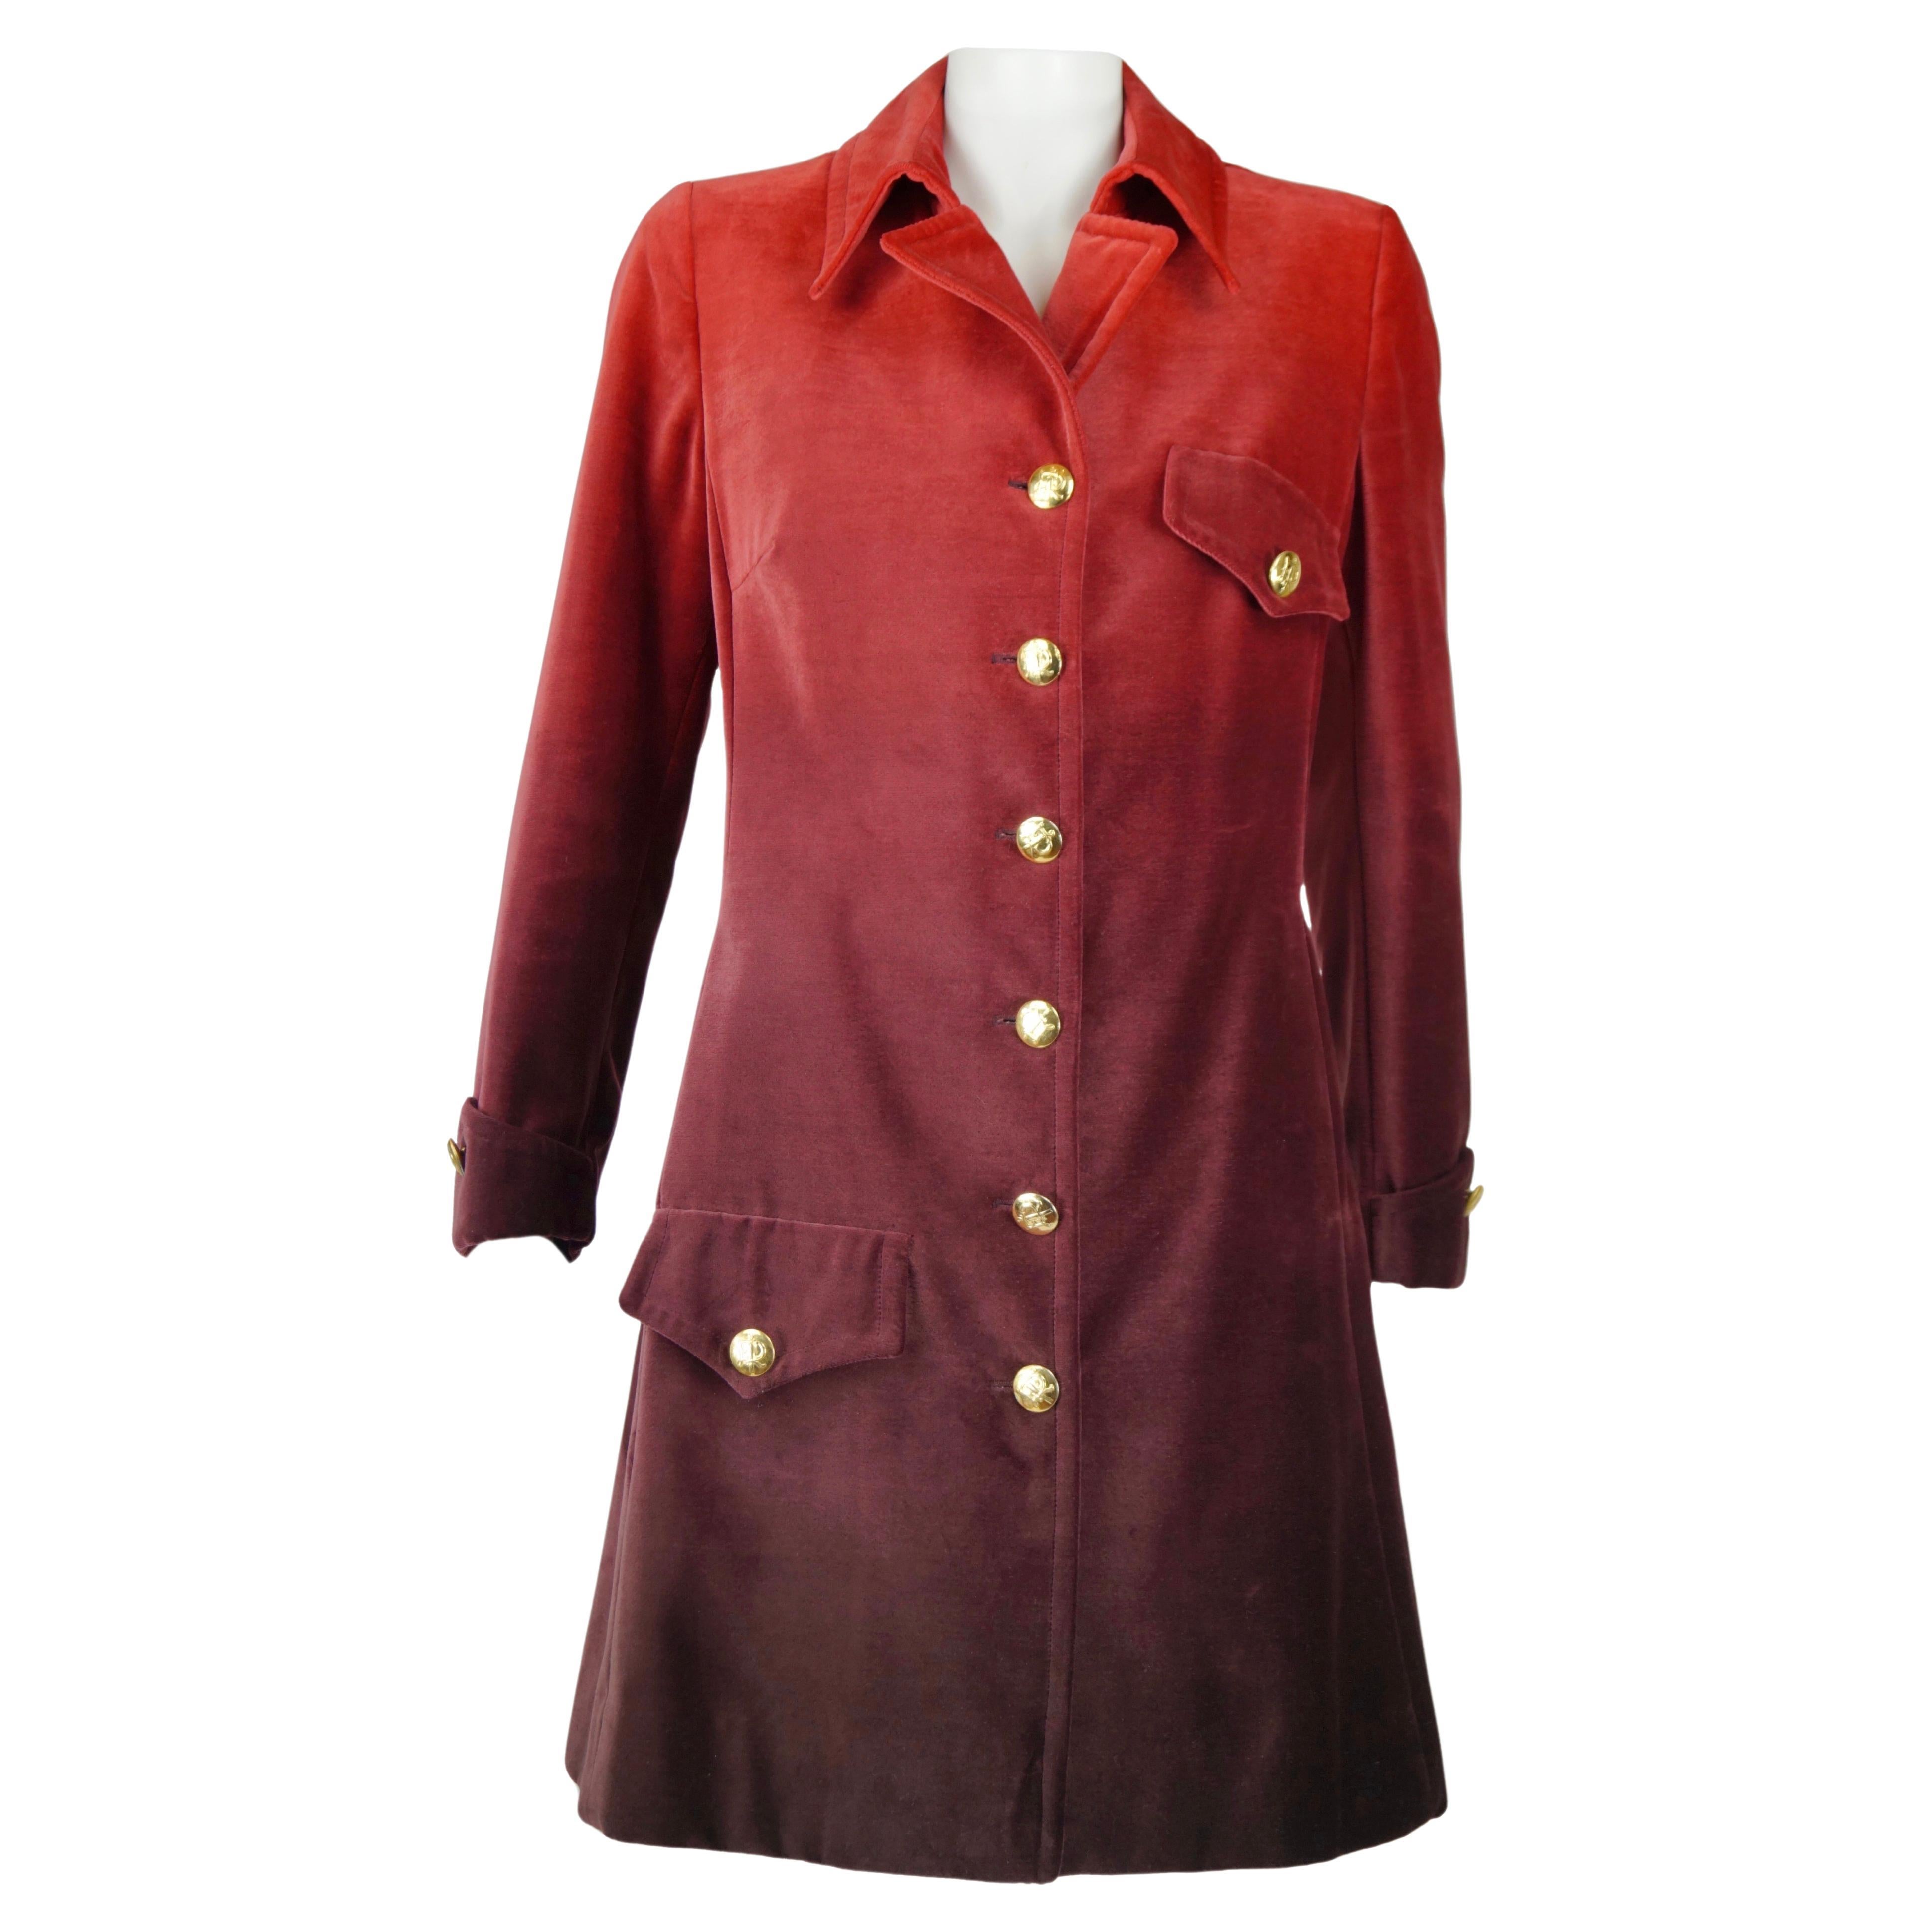 Roberta di Camerino velvet red coat vintage 70s